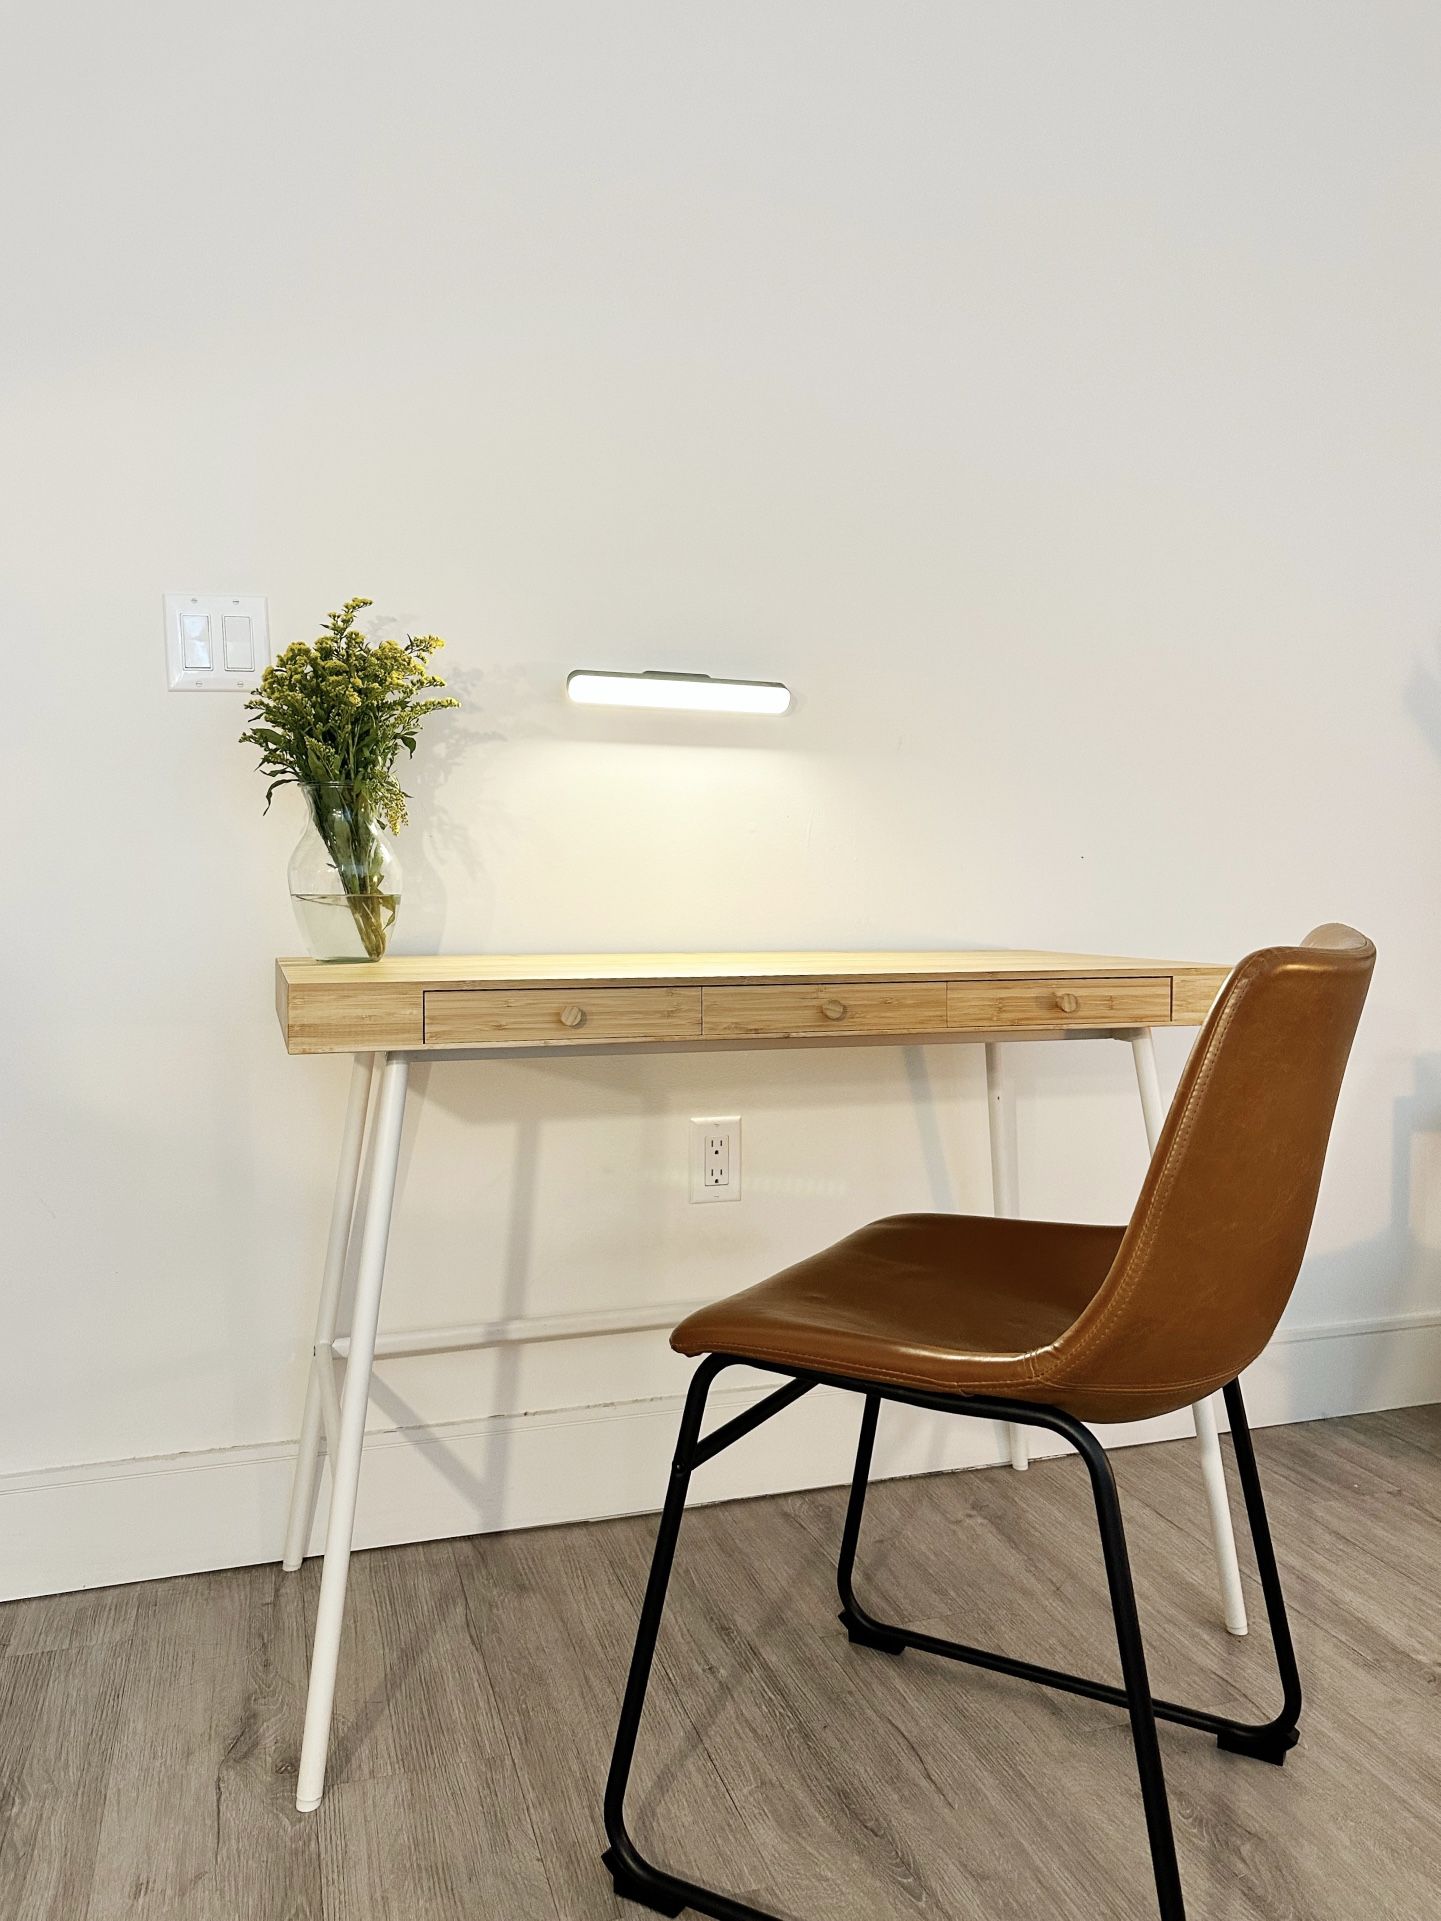 Small lightweight desk